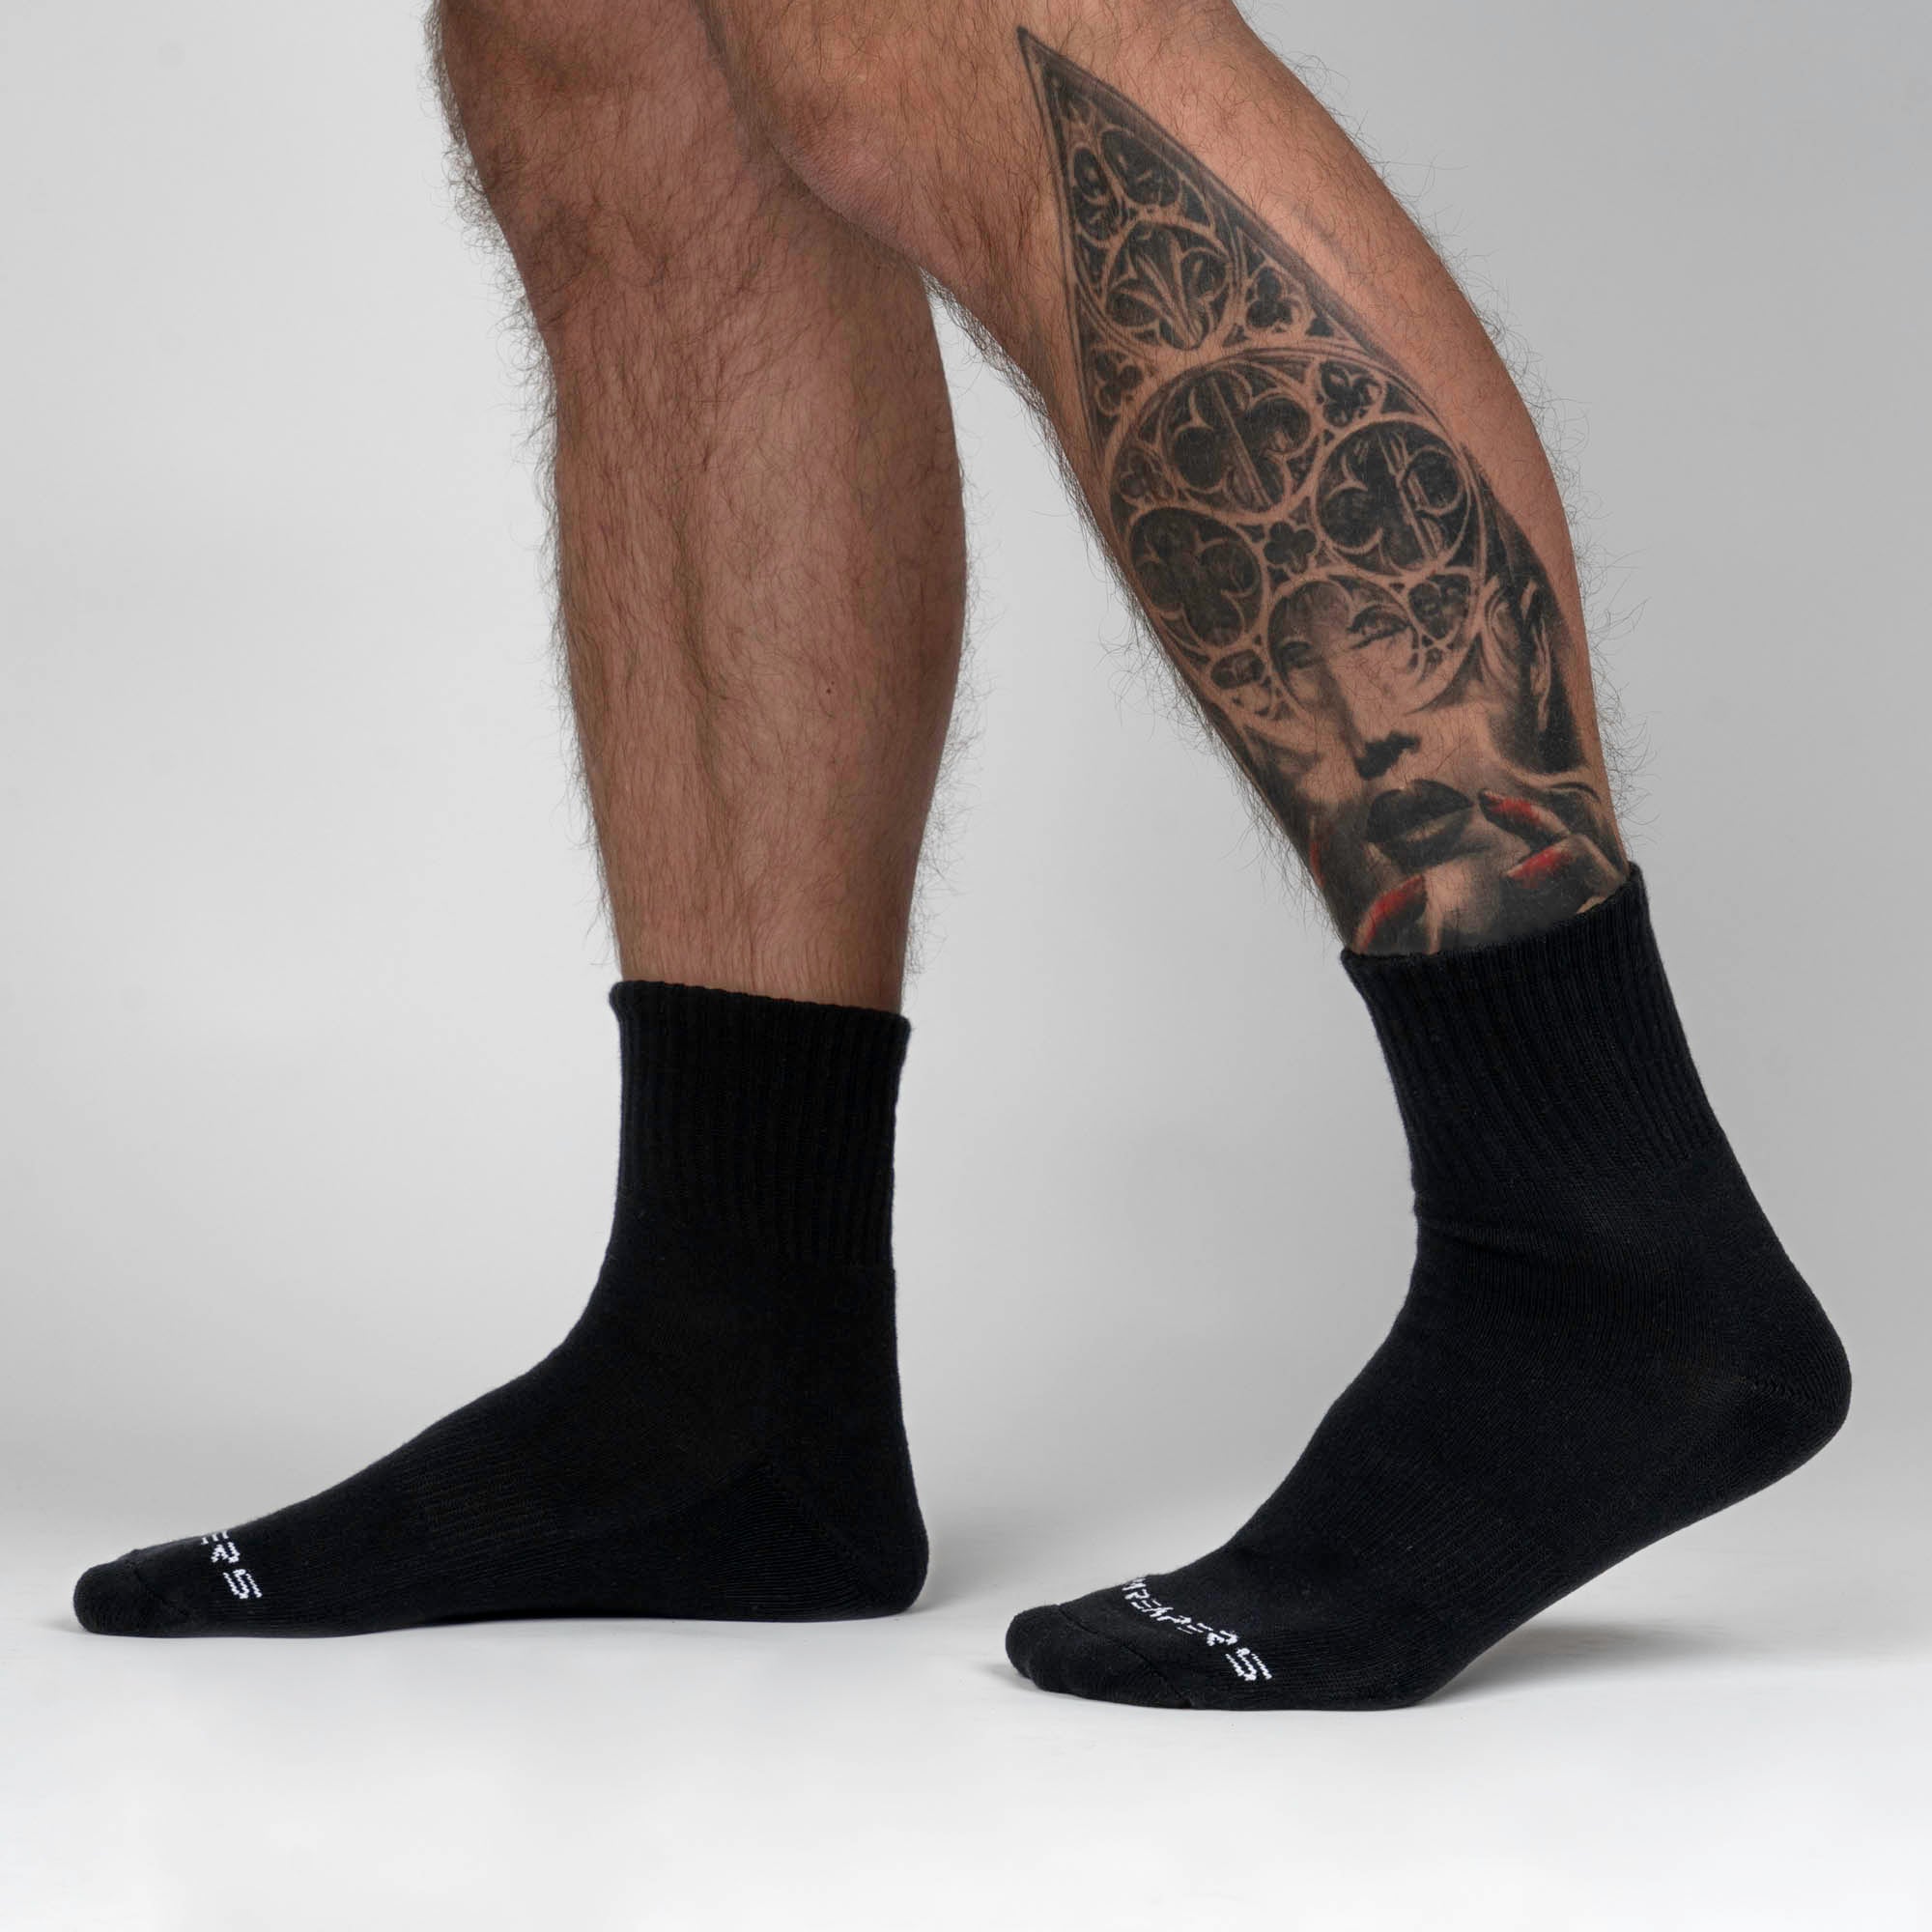 K-Swiss Quarter Length Cushioned Athletic Socks for Women, 6-Pack